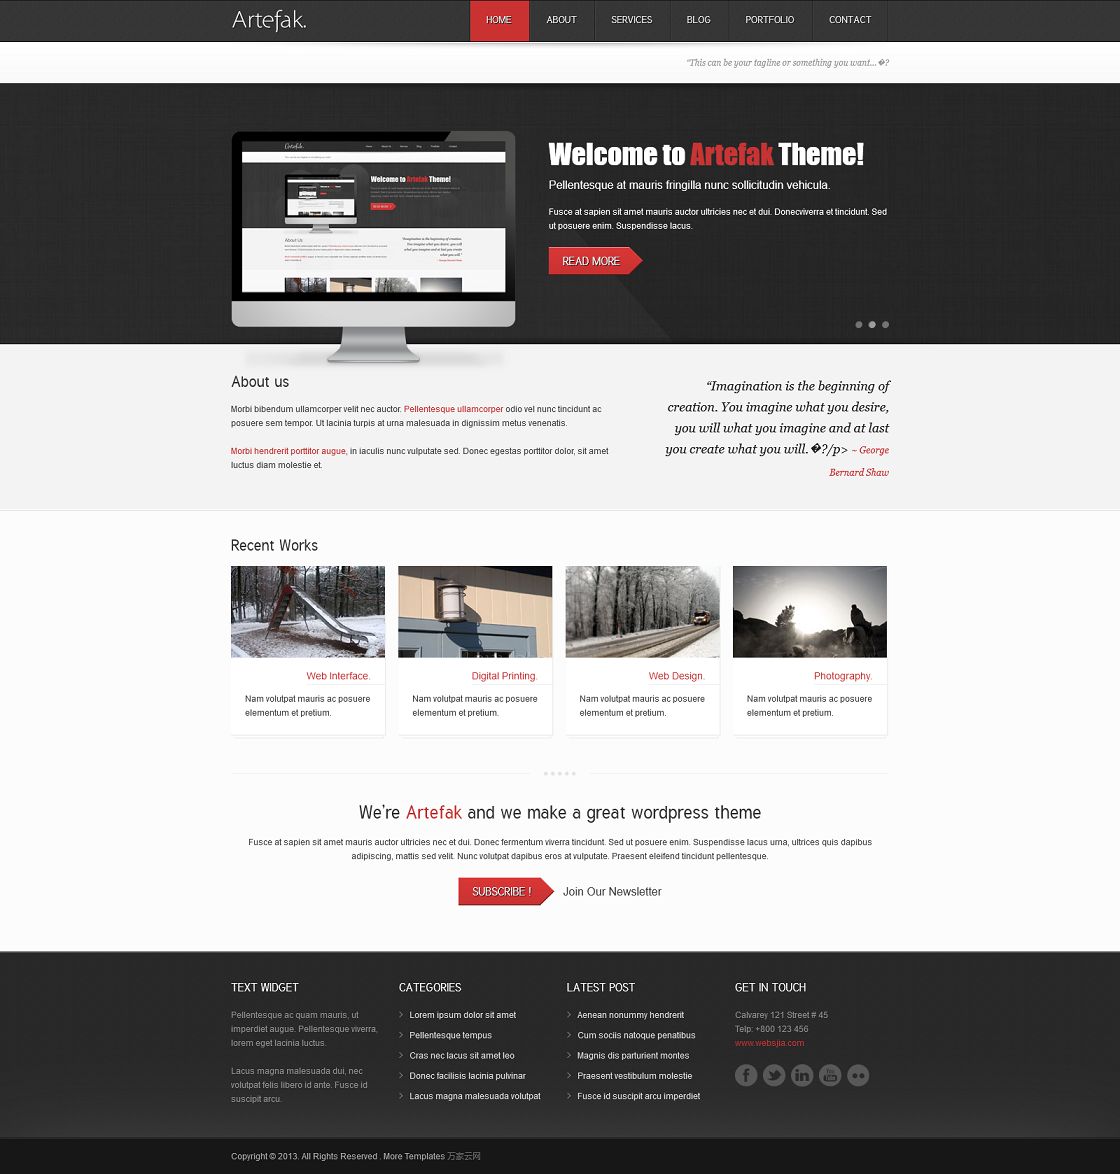 黑色商务简洁互联网企业官网html5模板